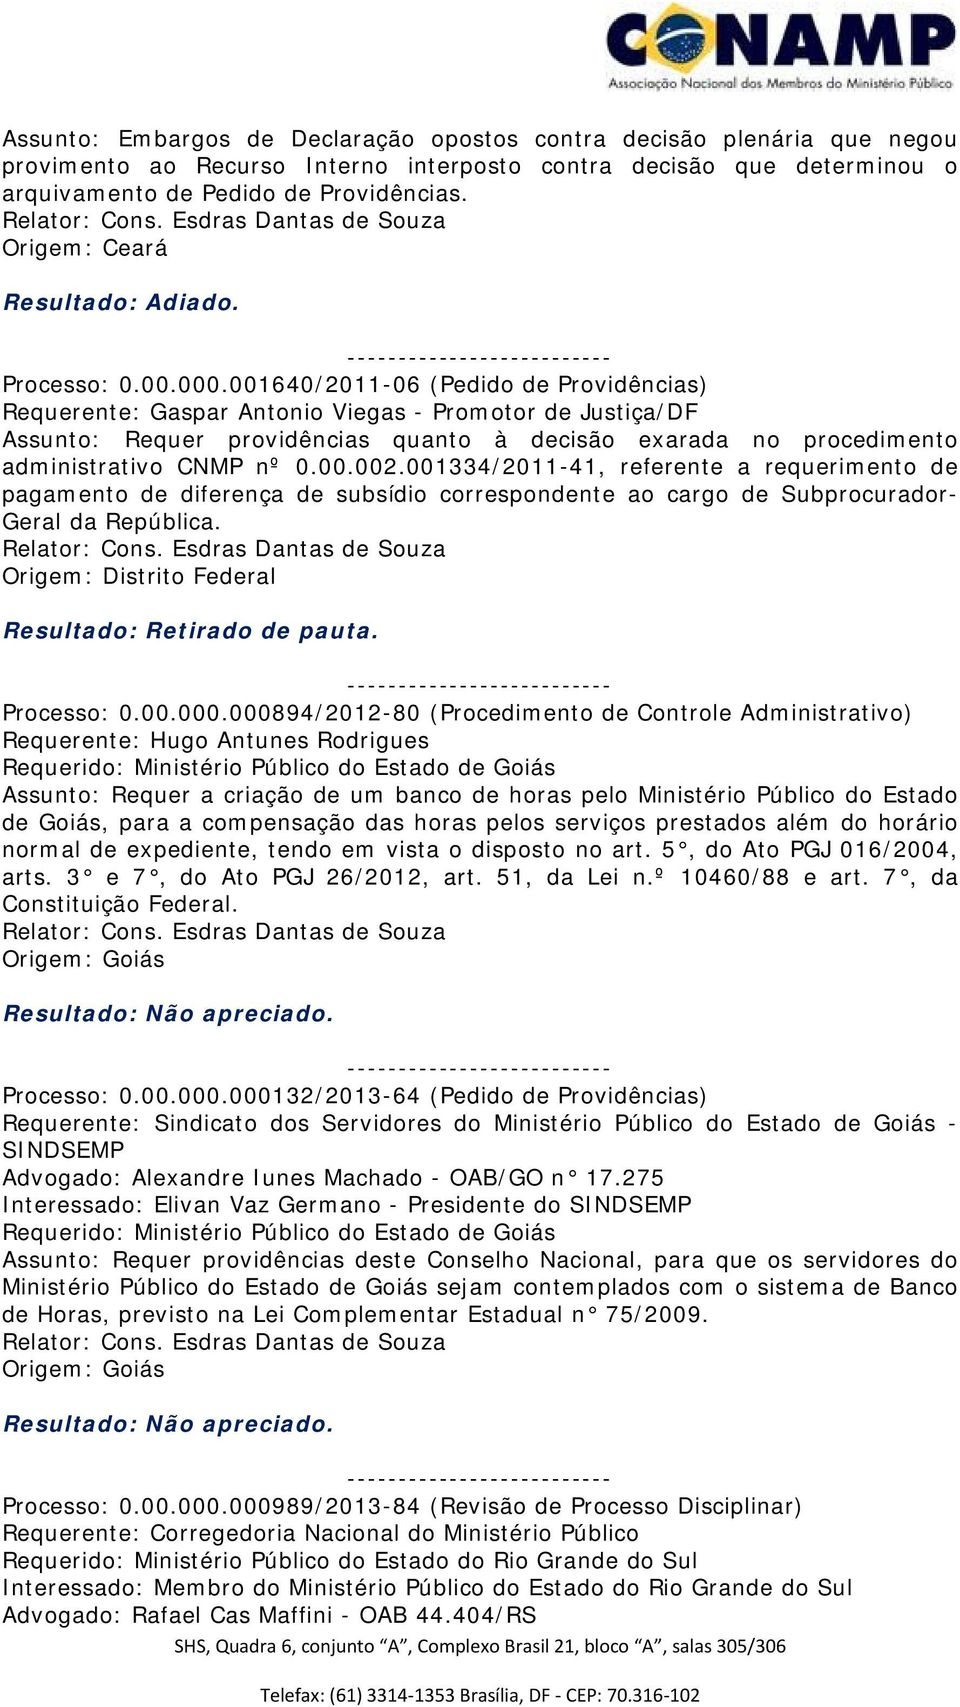 001640/2011-06 (Pedido de Providências) Requerente: Gaspar Antonio Viegas - Promotor de Justiça/DF Assunto: Requer providências quanto à decisão exarada no procedimento administrativo CNMP nº 0.00.002.